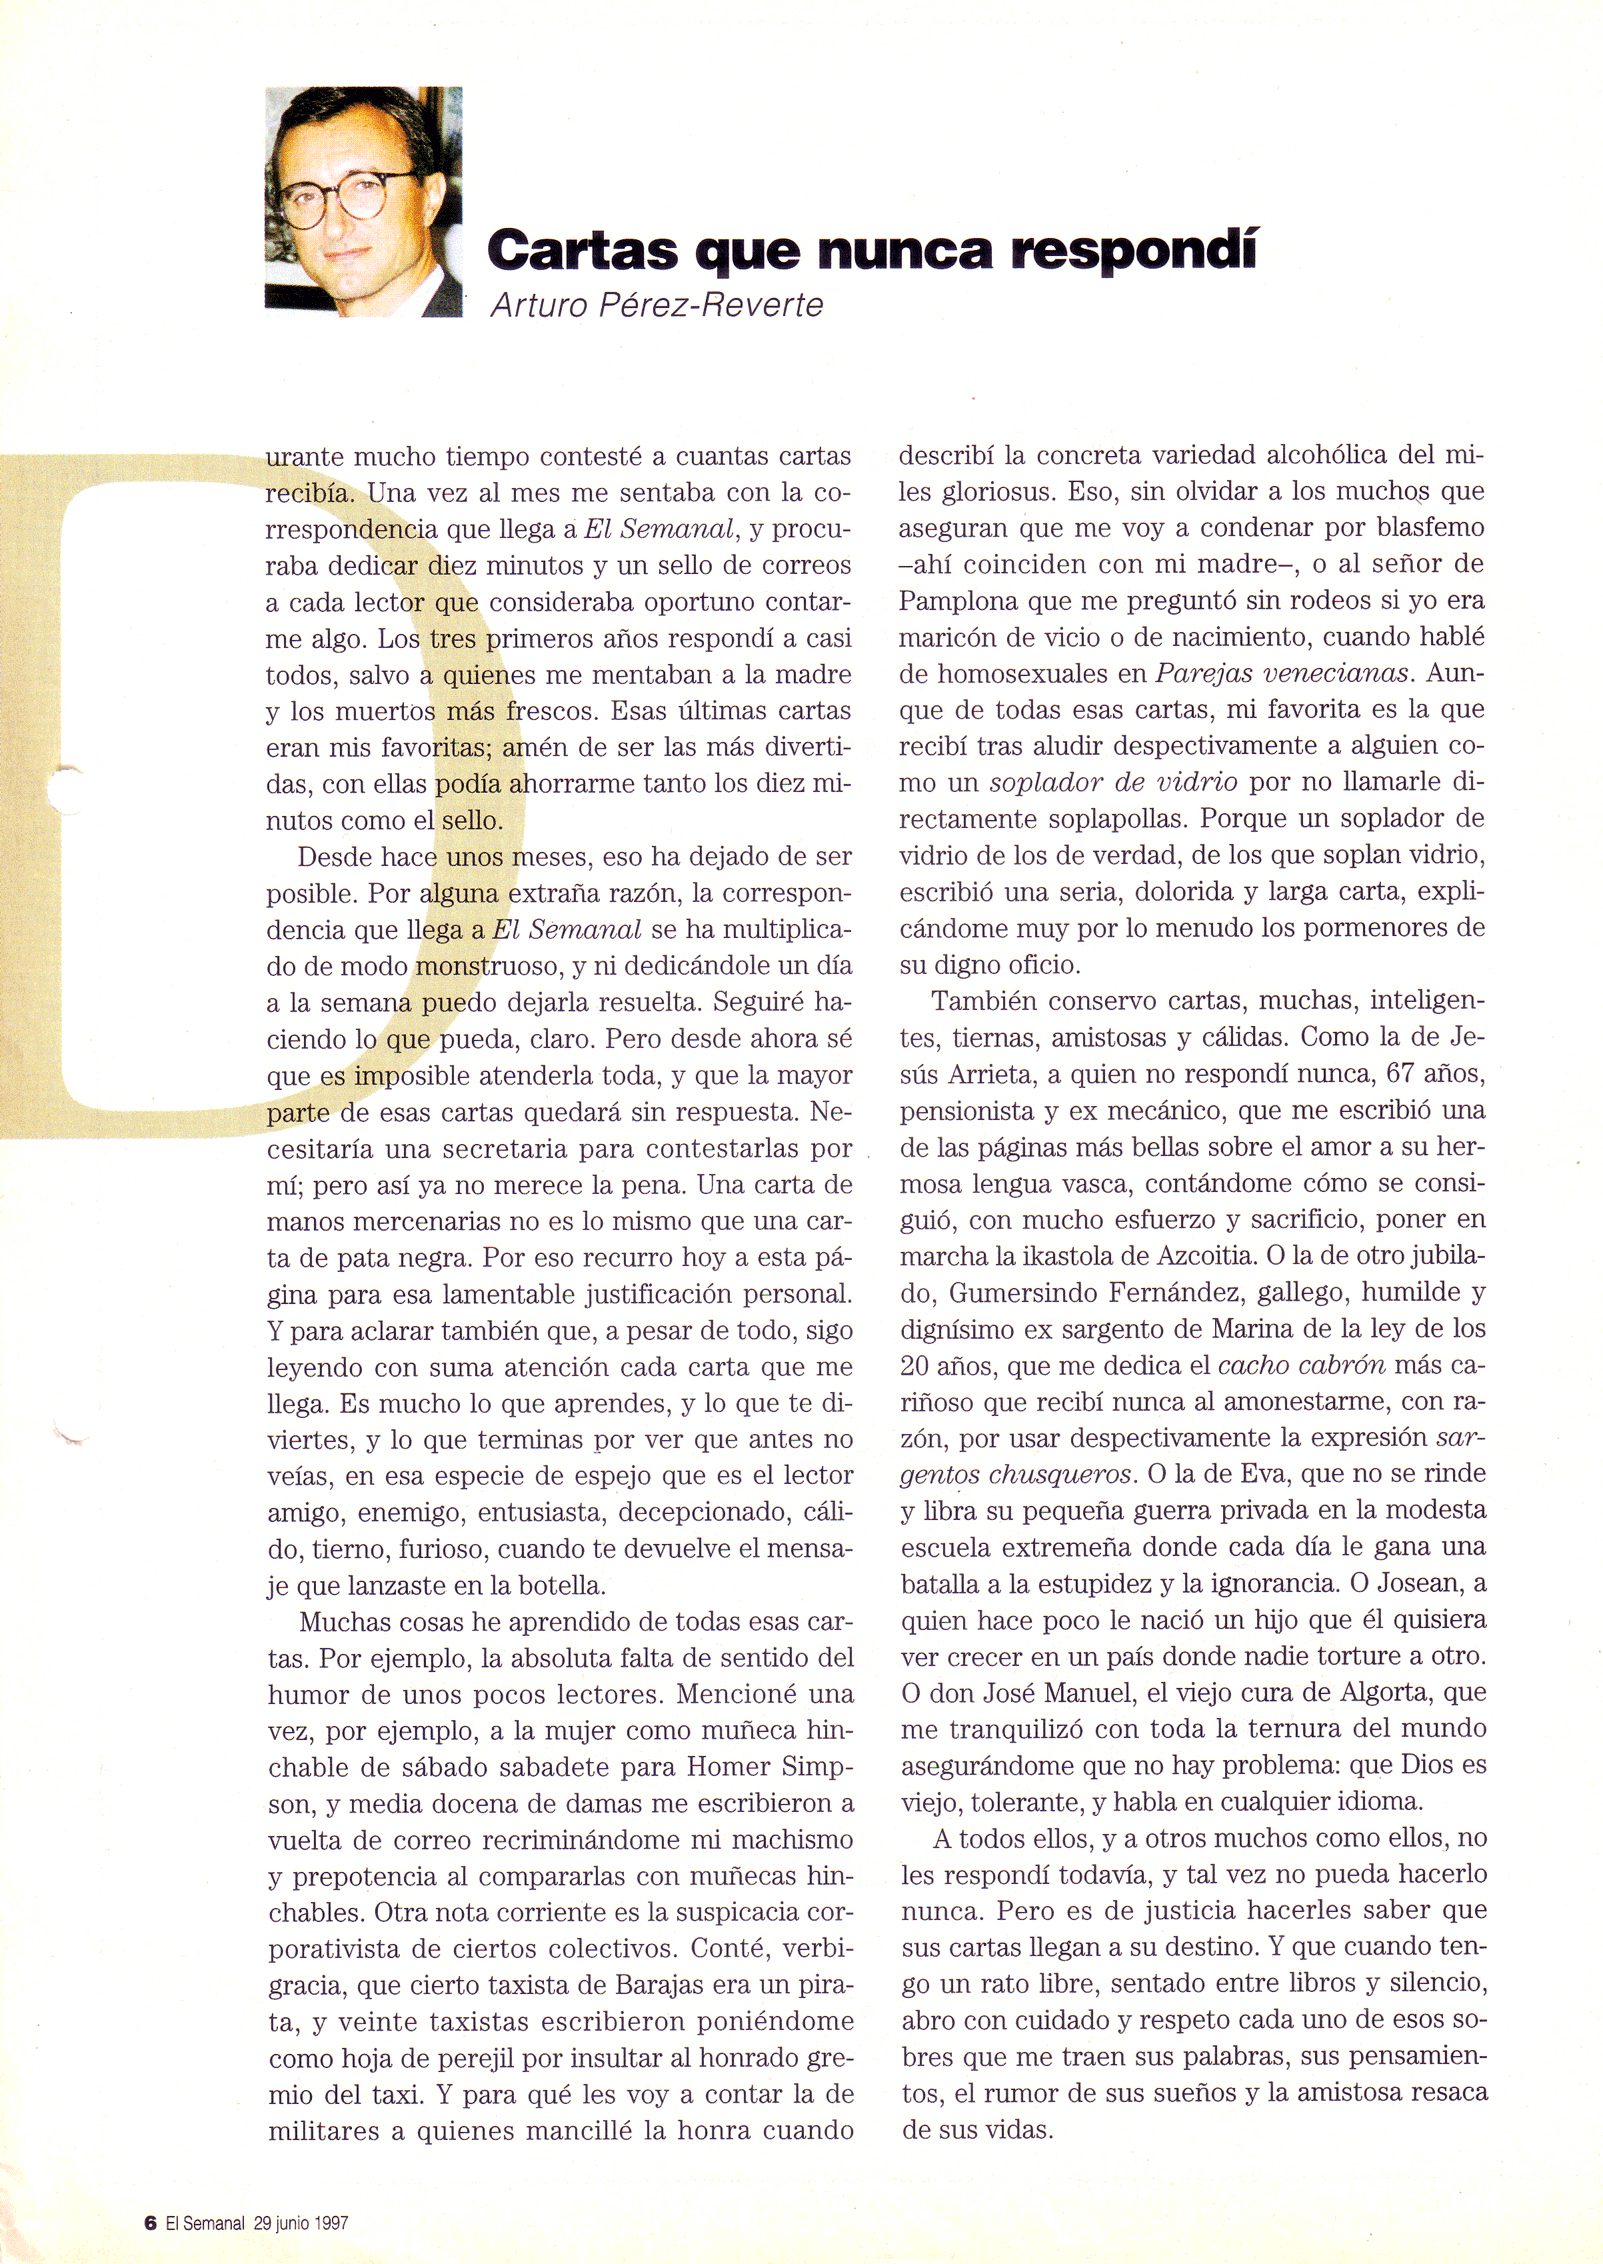 "Cartas que nunca respondí" El Semanal 29 de junio de 1997